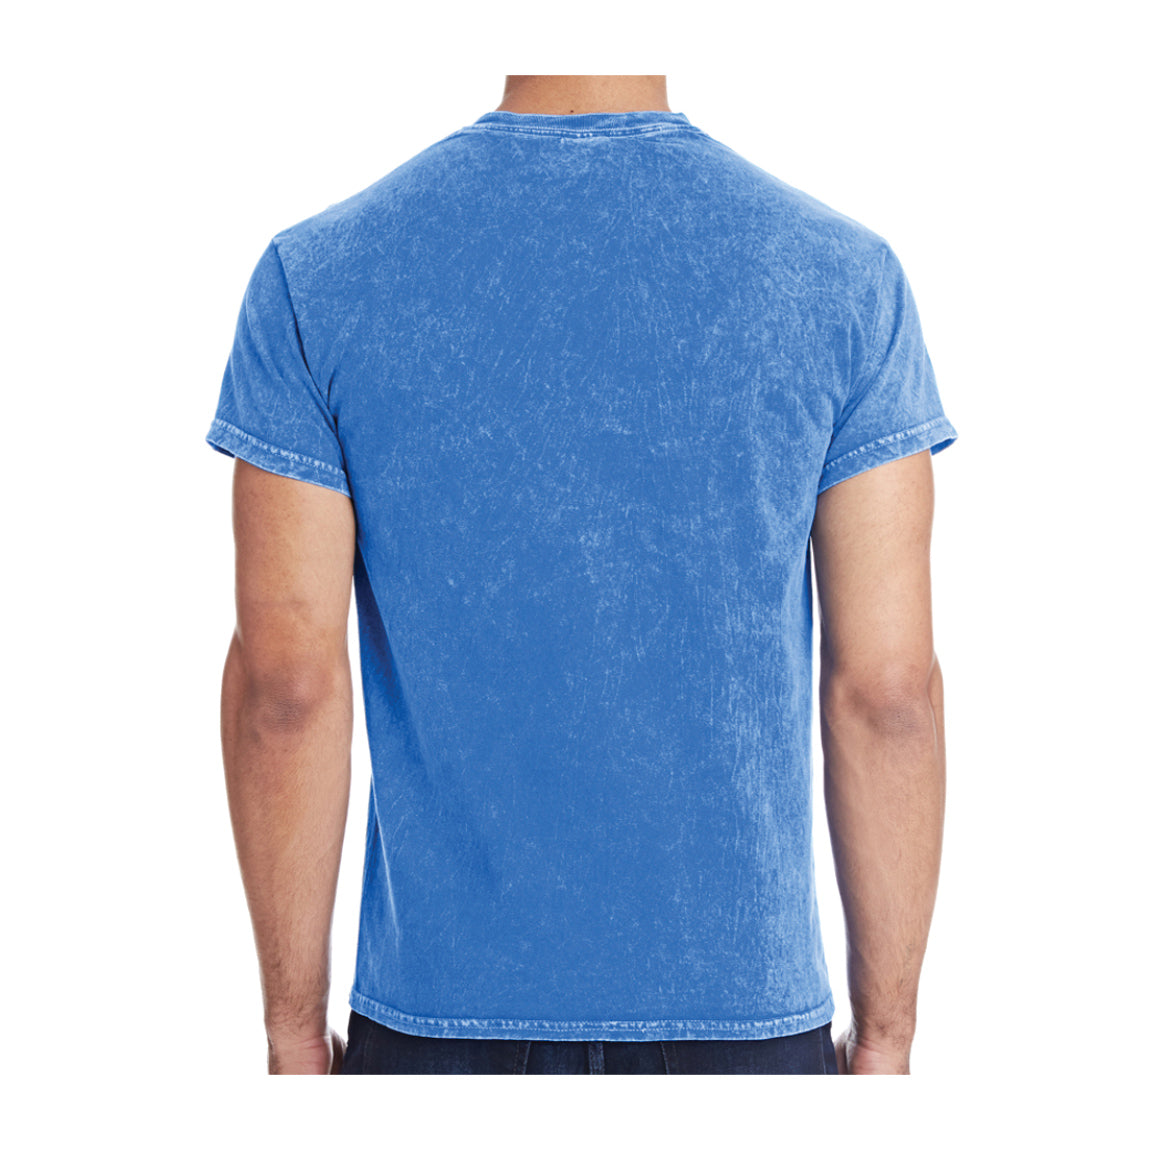 Tie-Dye Adult Cotton Vintage Wash T-Shirt